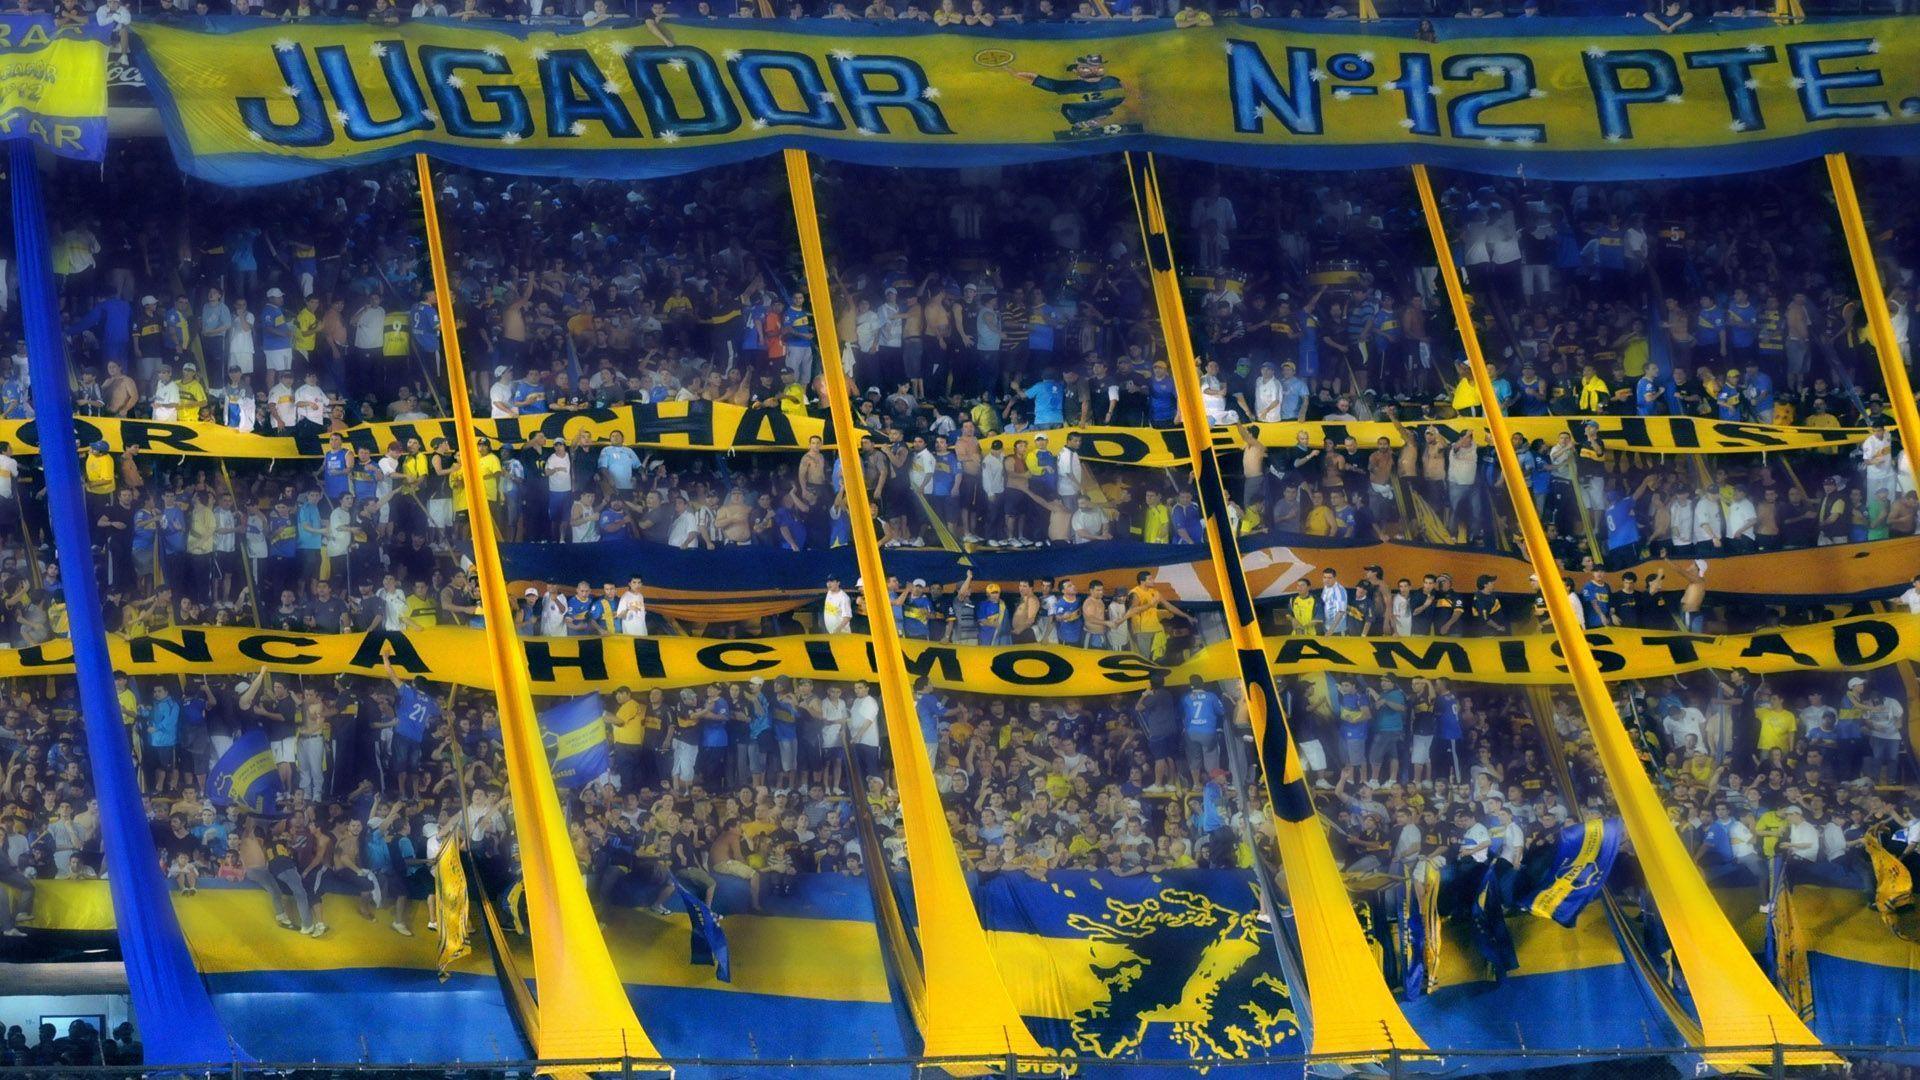 Wallpaper, textos y banners: CA Boca Juniors!